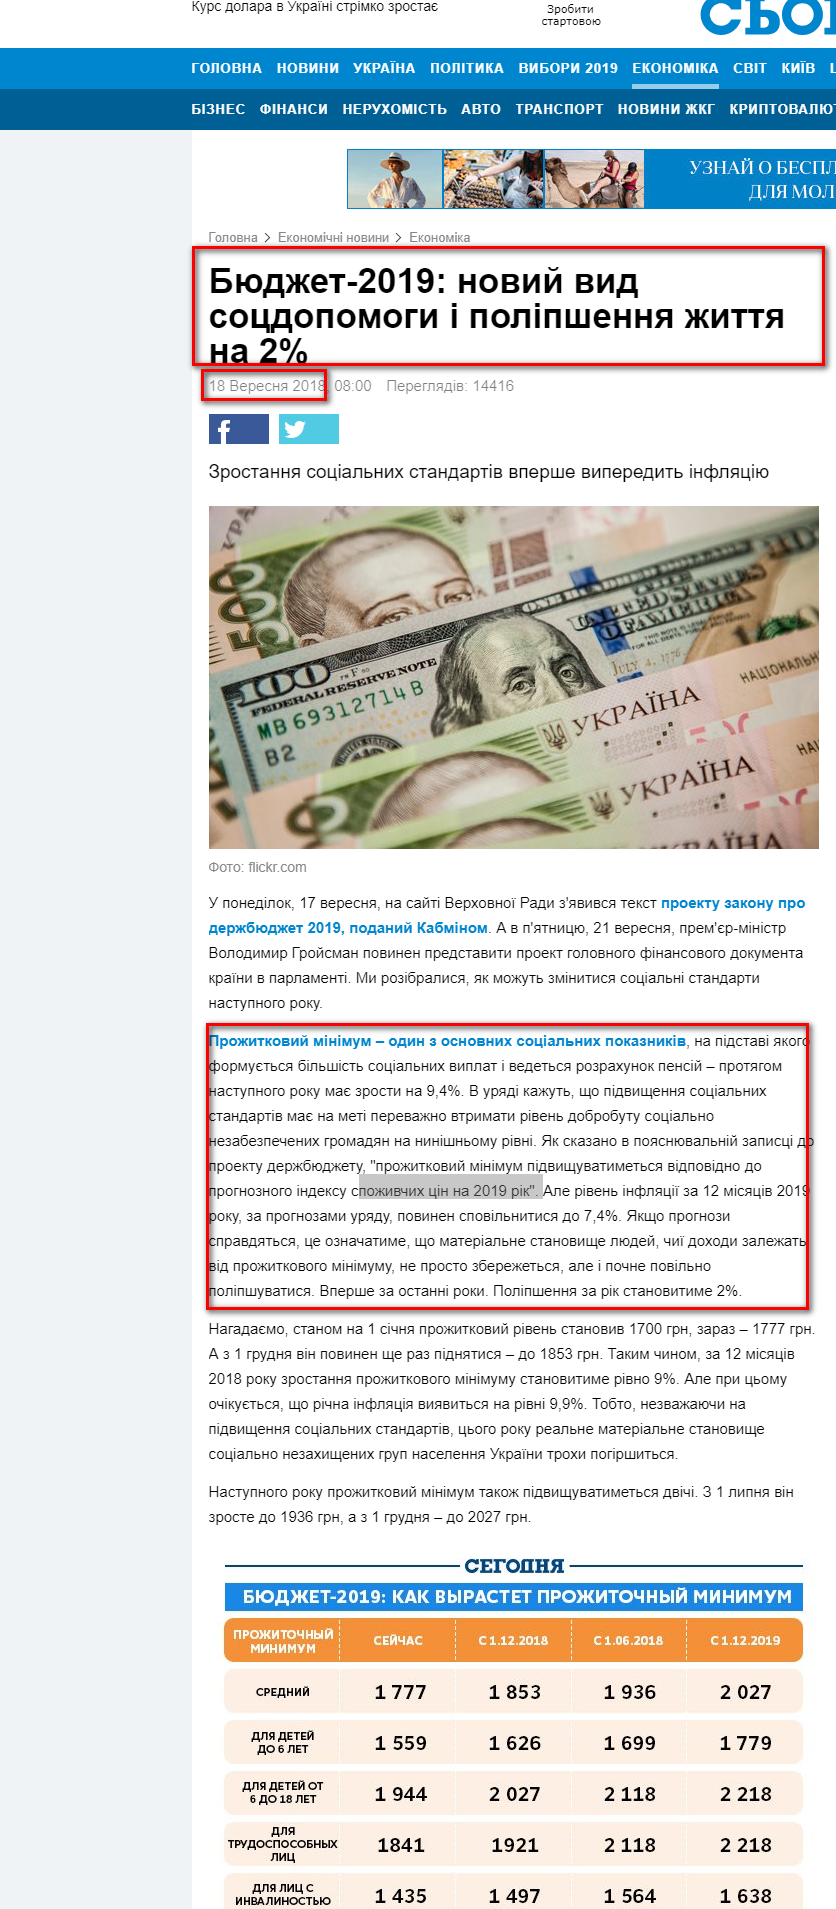 https://ukr.segodnya.ua/economics/enews/byudzhet-2019-novyy-vid-socpomoshchi-i-uluchshenie-zhizni-na-2-1171650.html